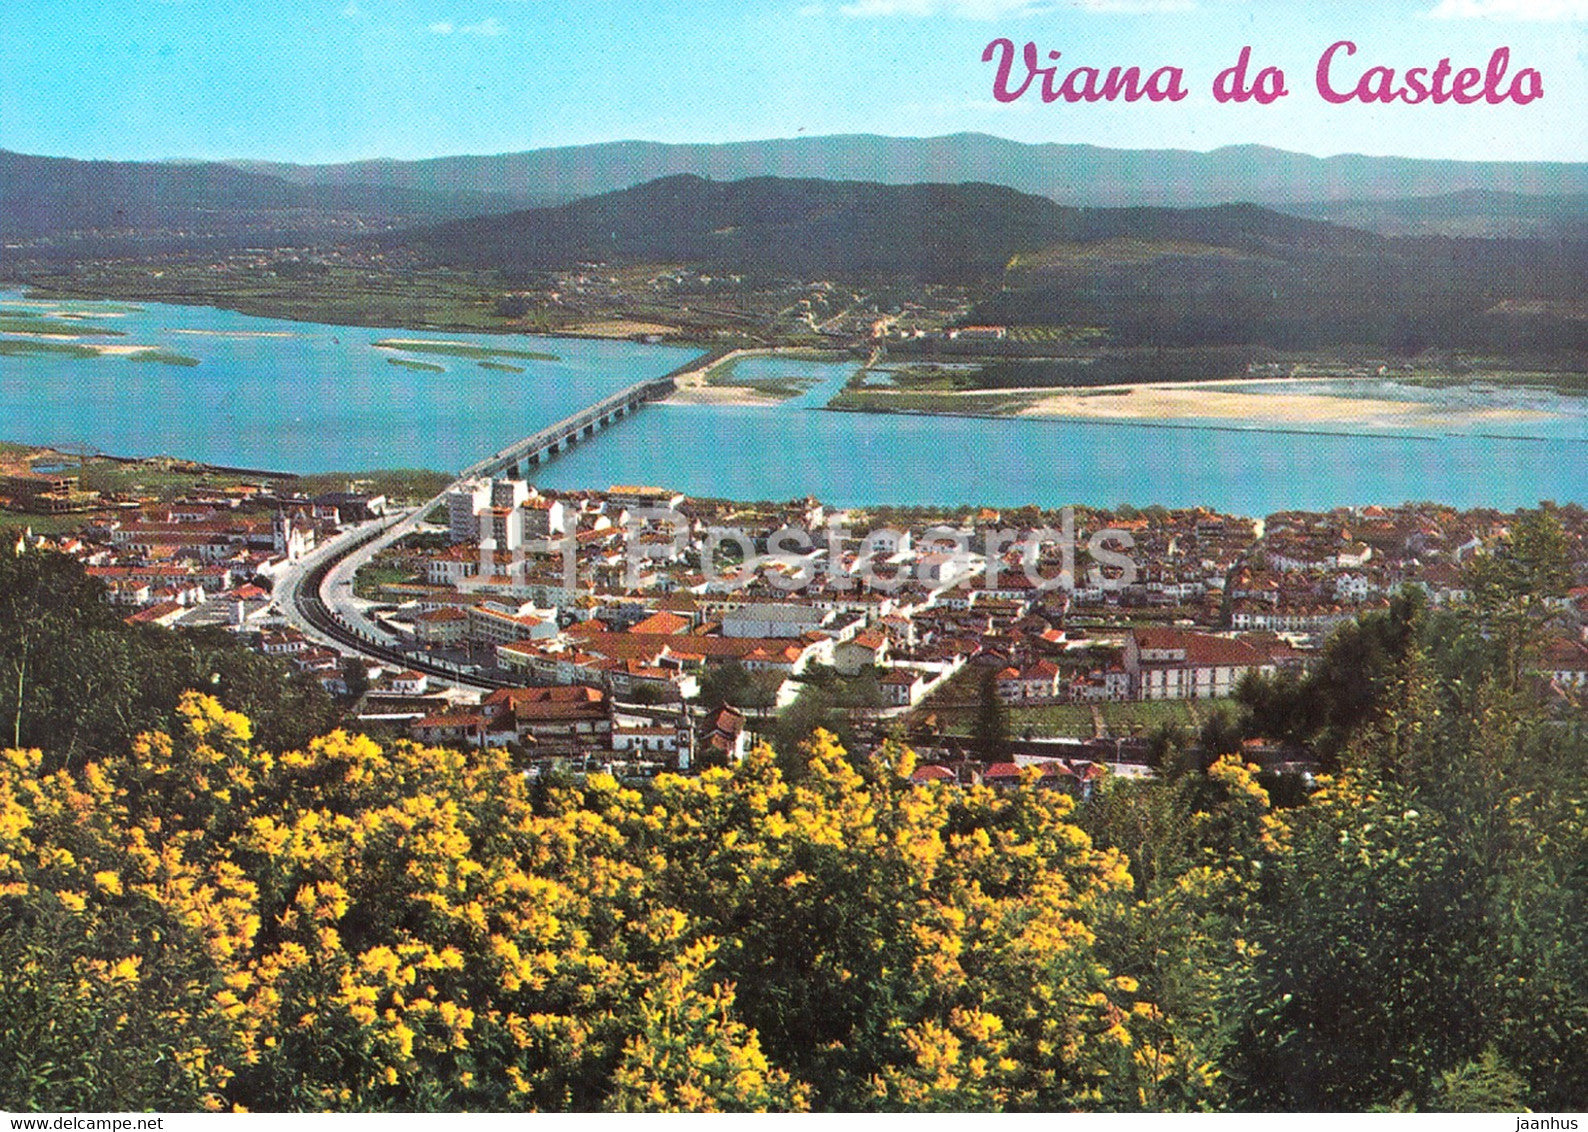 Viana do Castelo - Vista parcial da cidade - 273 - Portugal - unused - JH Postcards